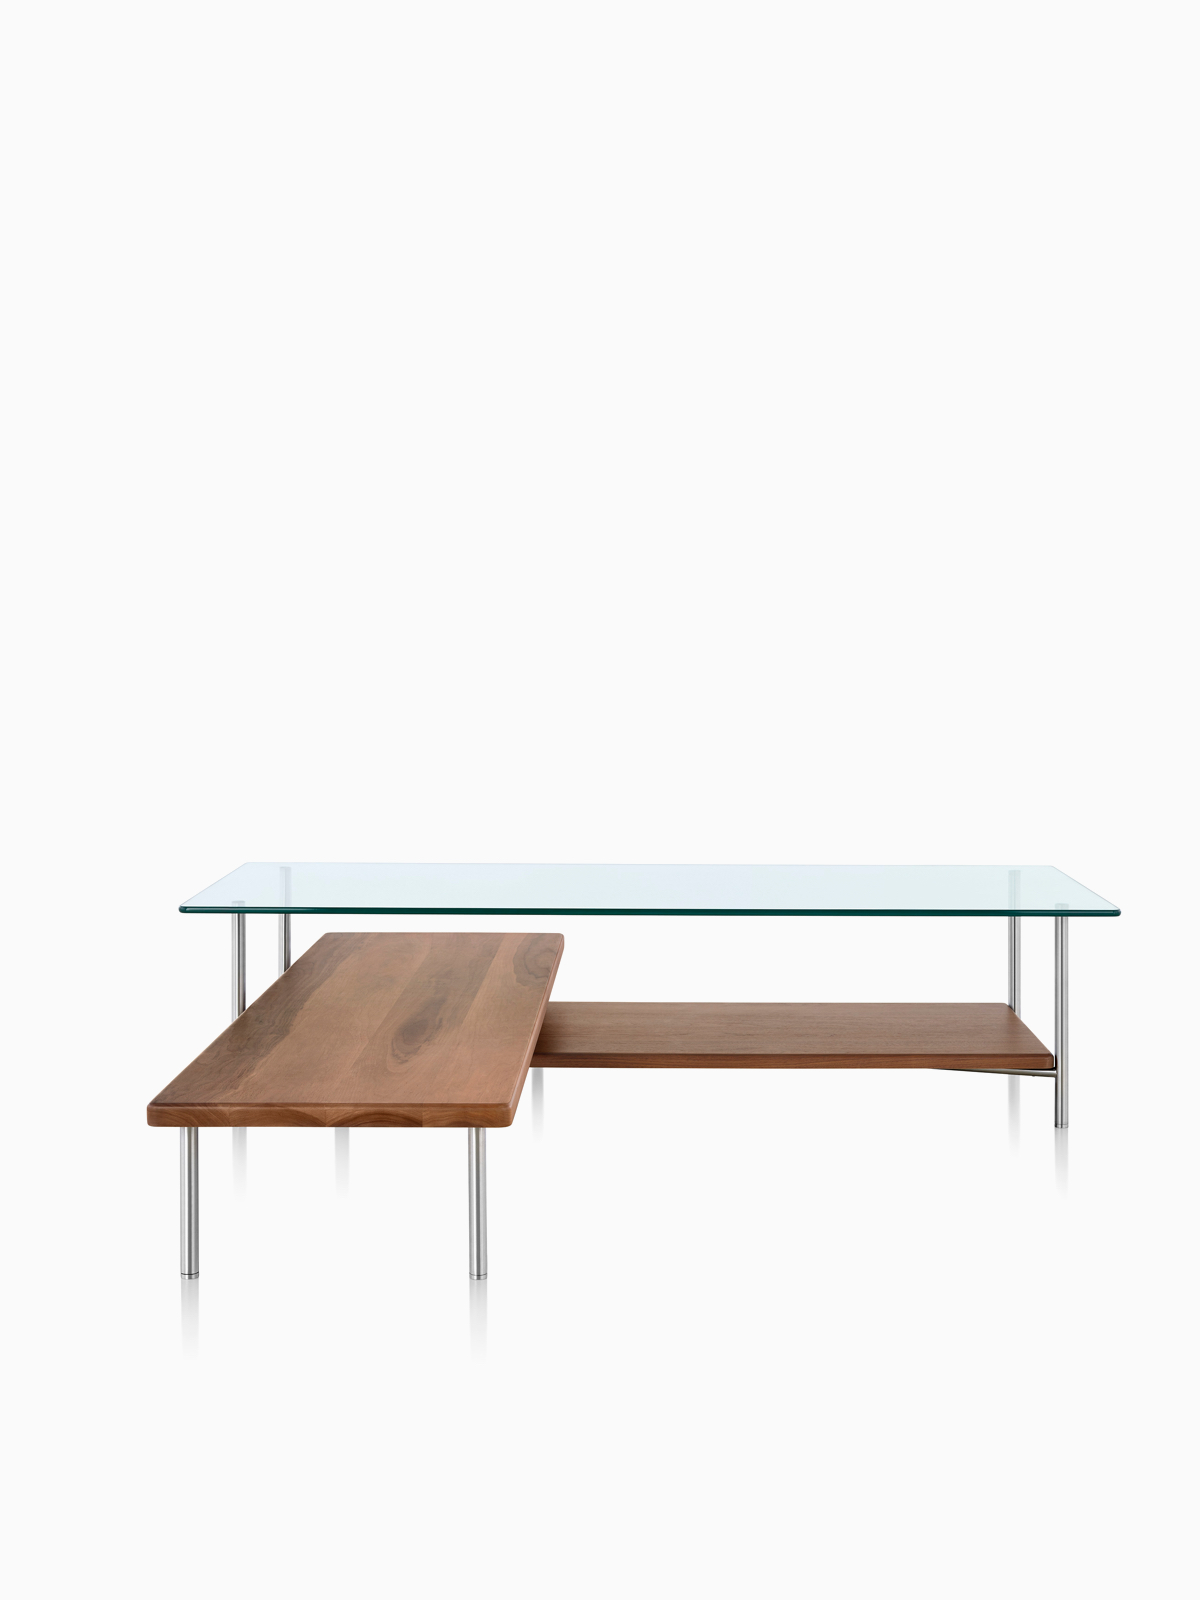 Layer-tafels